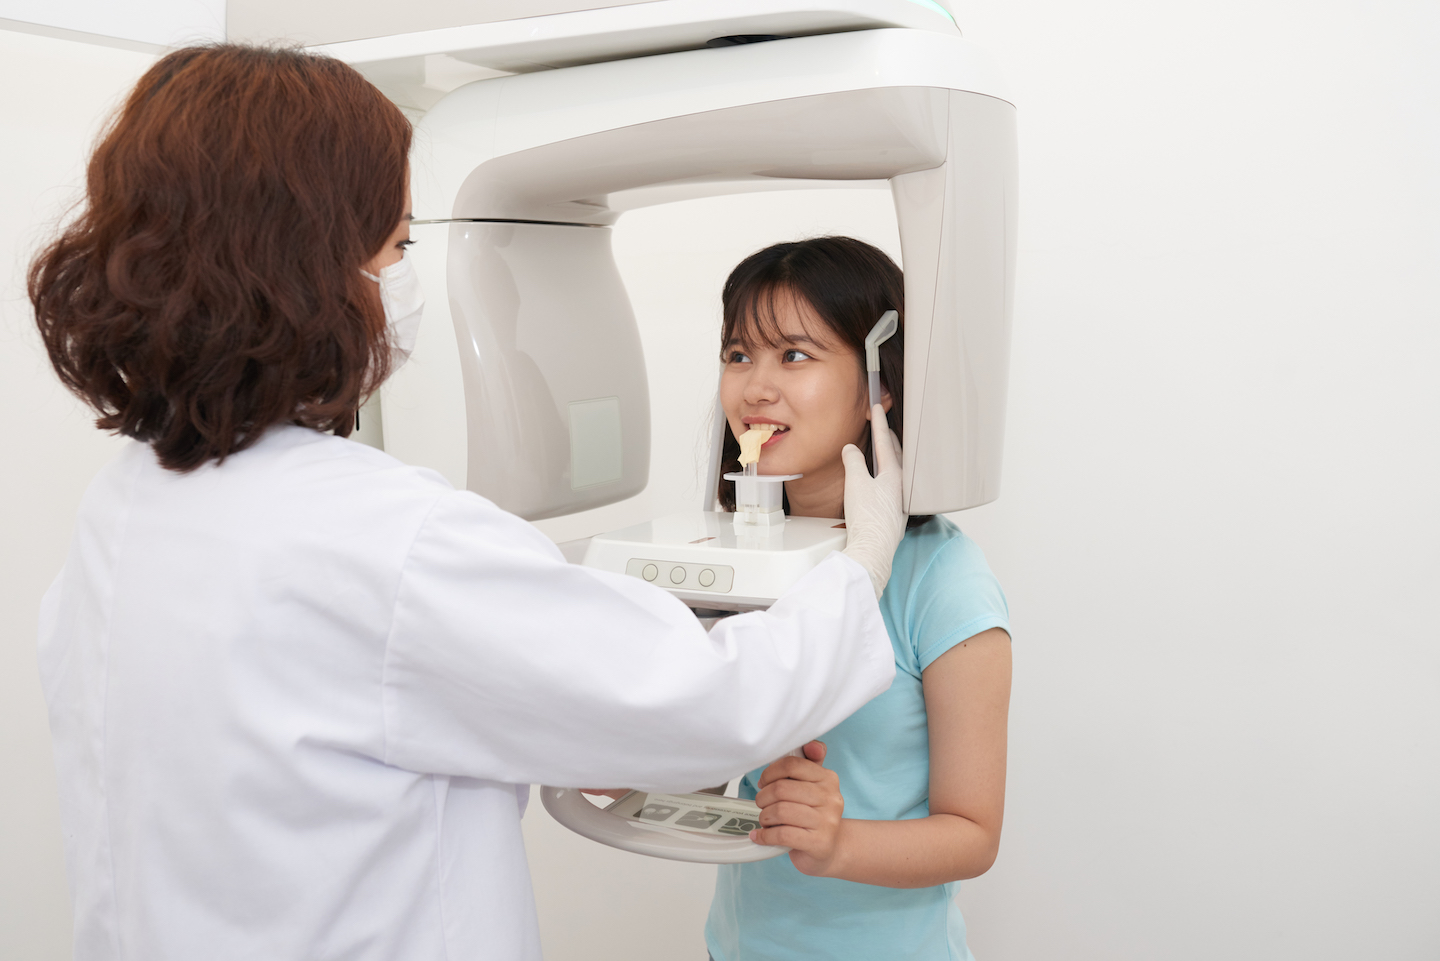 Рентгенологическое исследование зубов – безопасно или рискованно?